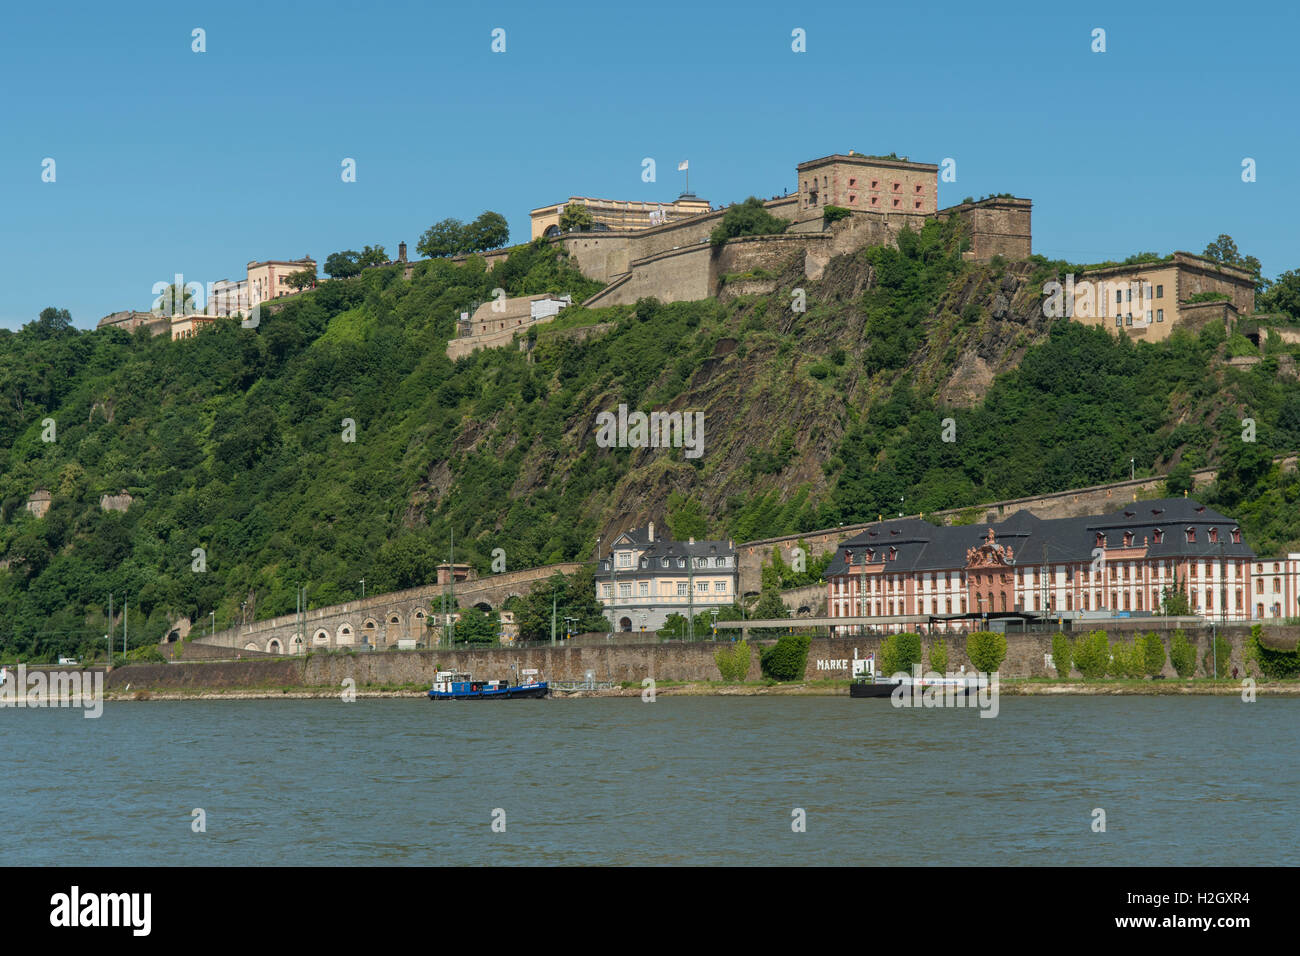 Festung Ehrenbreitstein, Koblenz, Germany Stock Photo